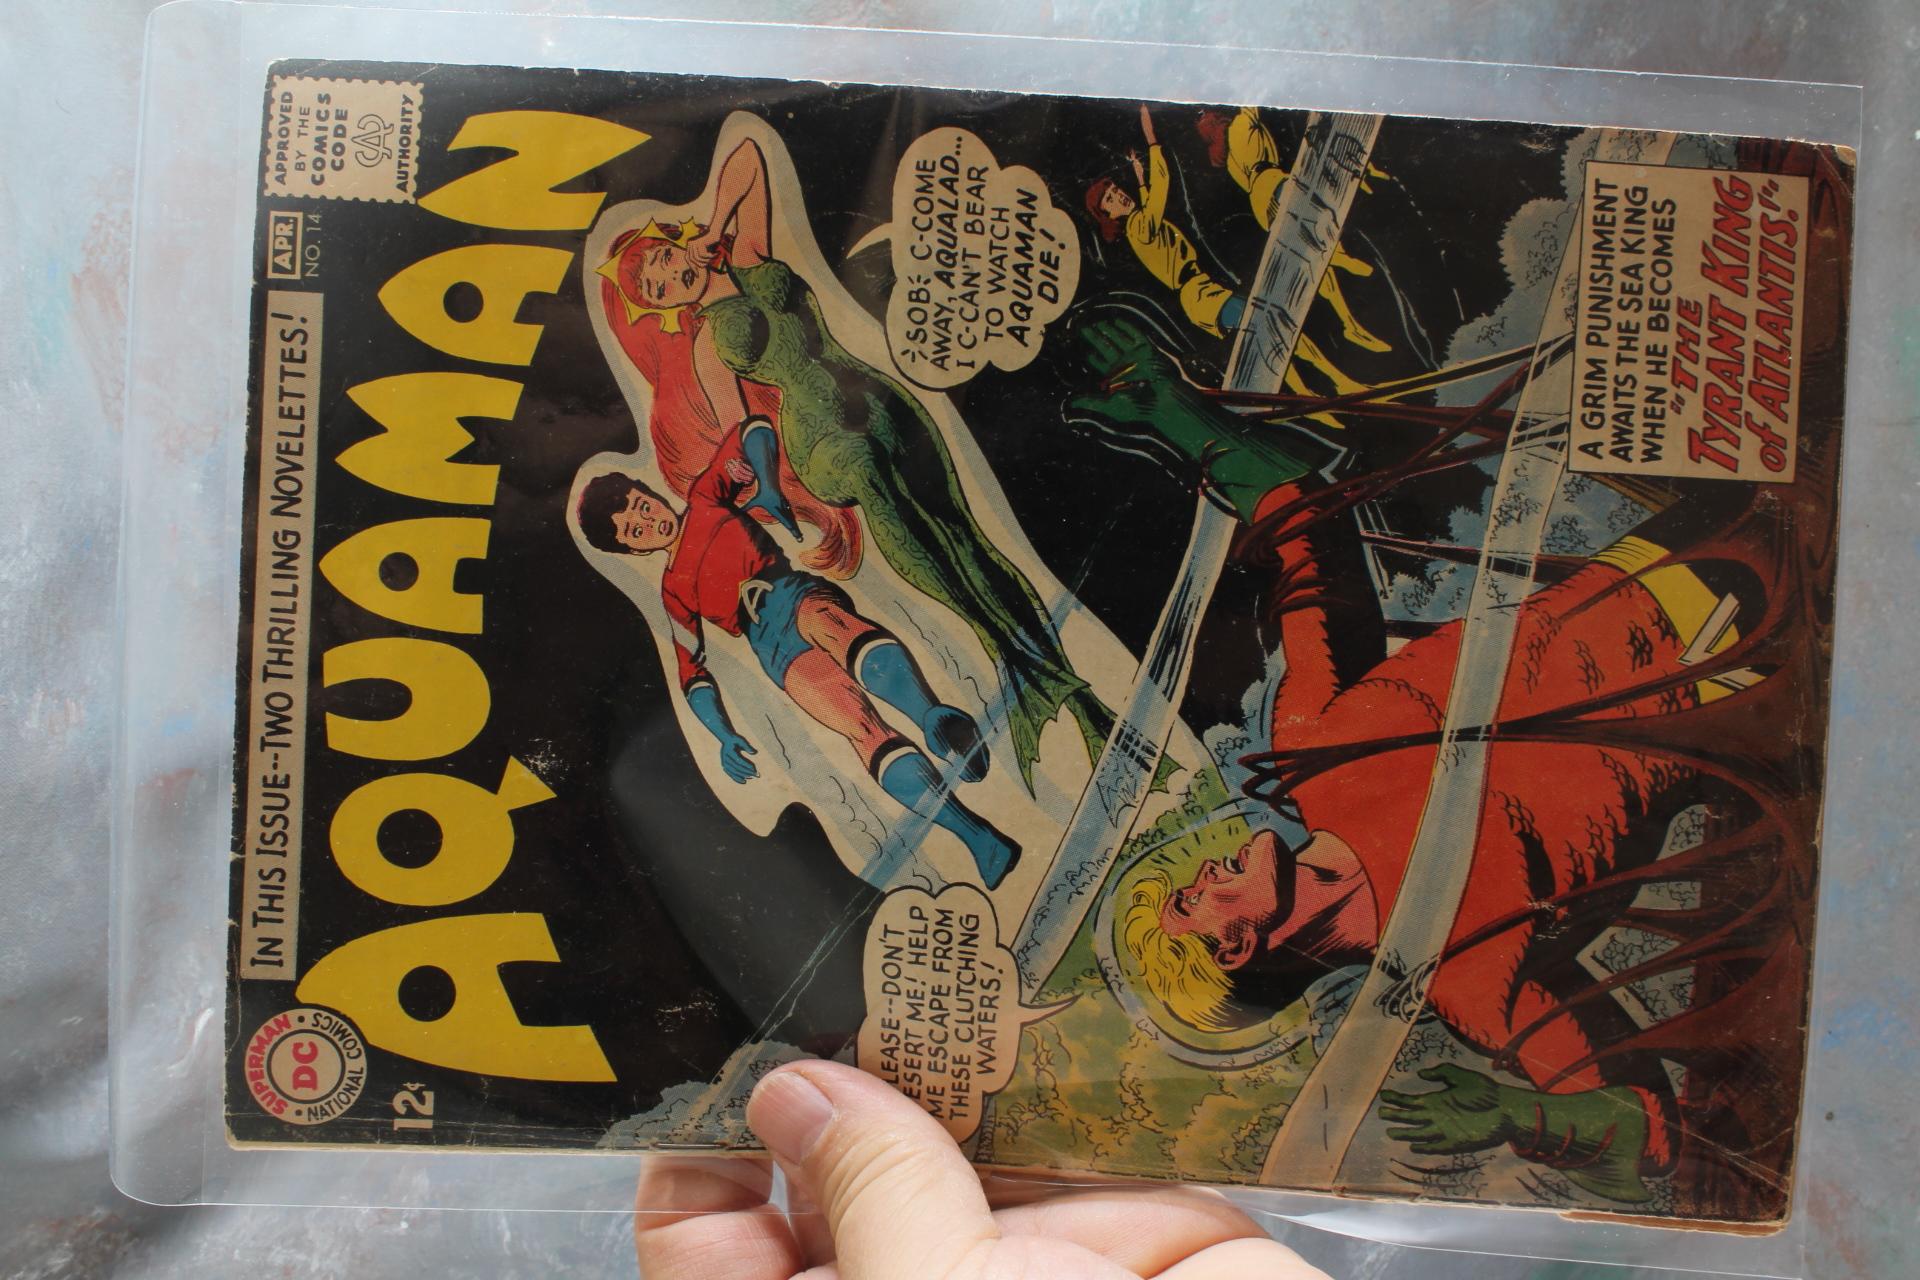 2 DC Vintage Comic Books Wonder Woman 20 Cent & Aquaman 12 Cent DC